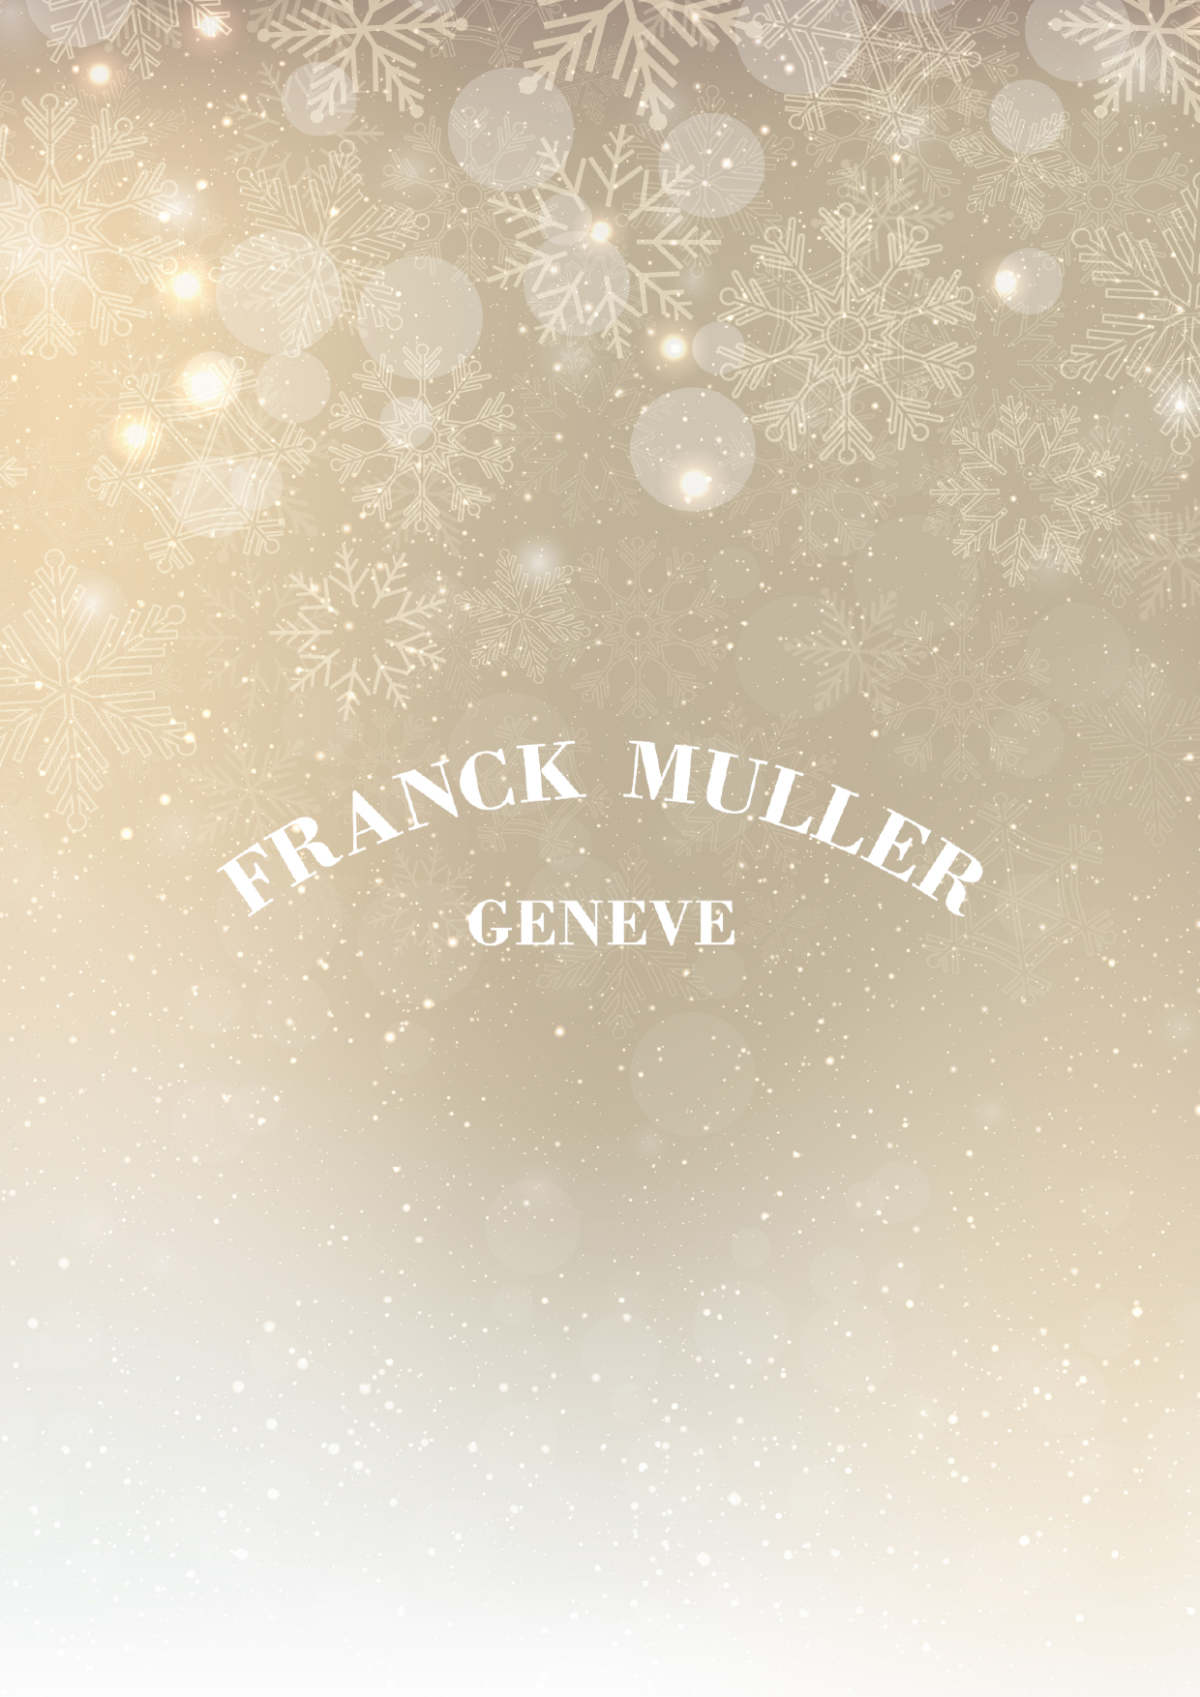 Franck Muller: Season's Greetings